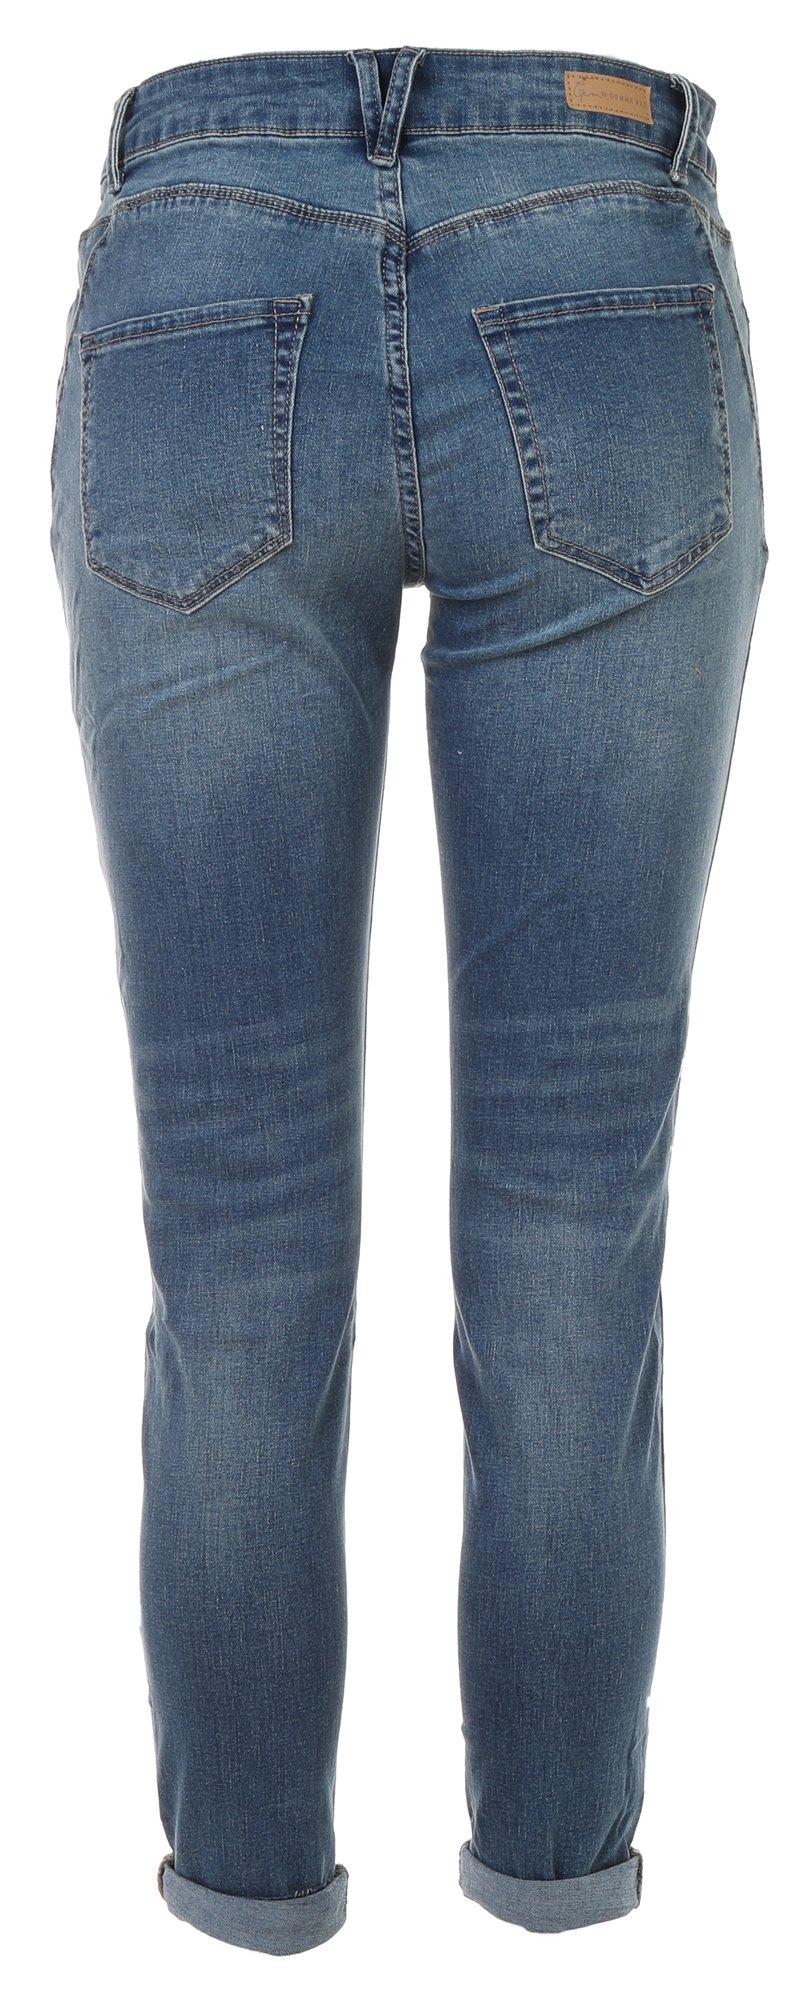 Gemma Rae Juniors High Rise Super Stretch Skinny Jeans